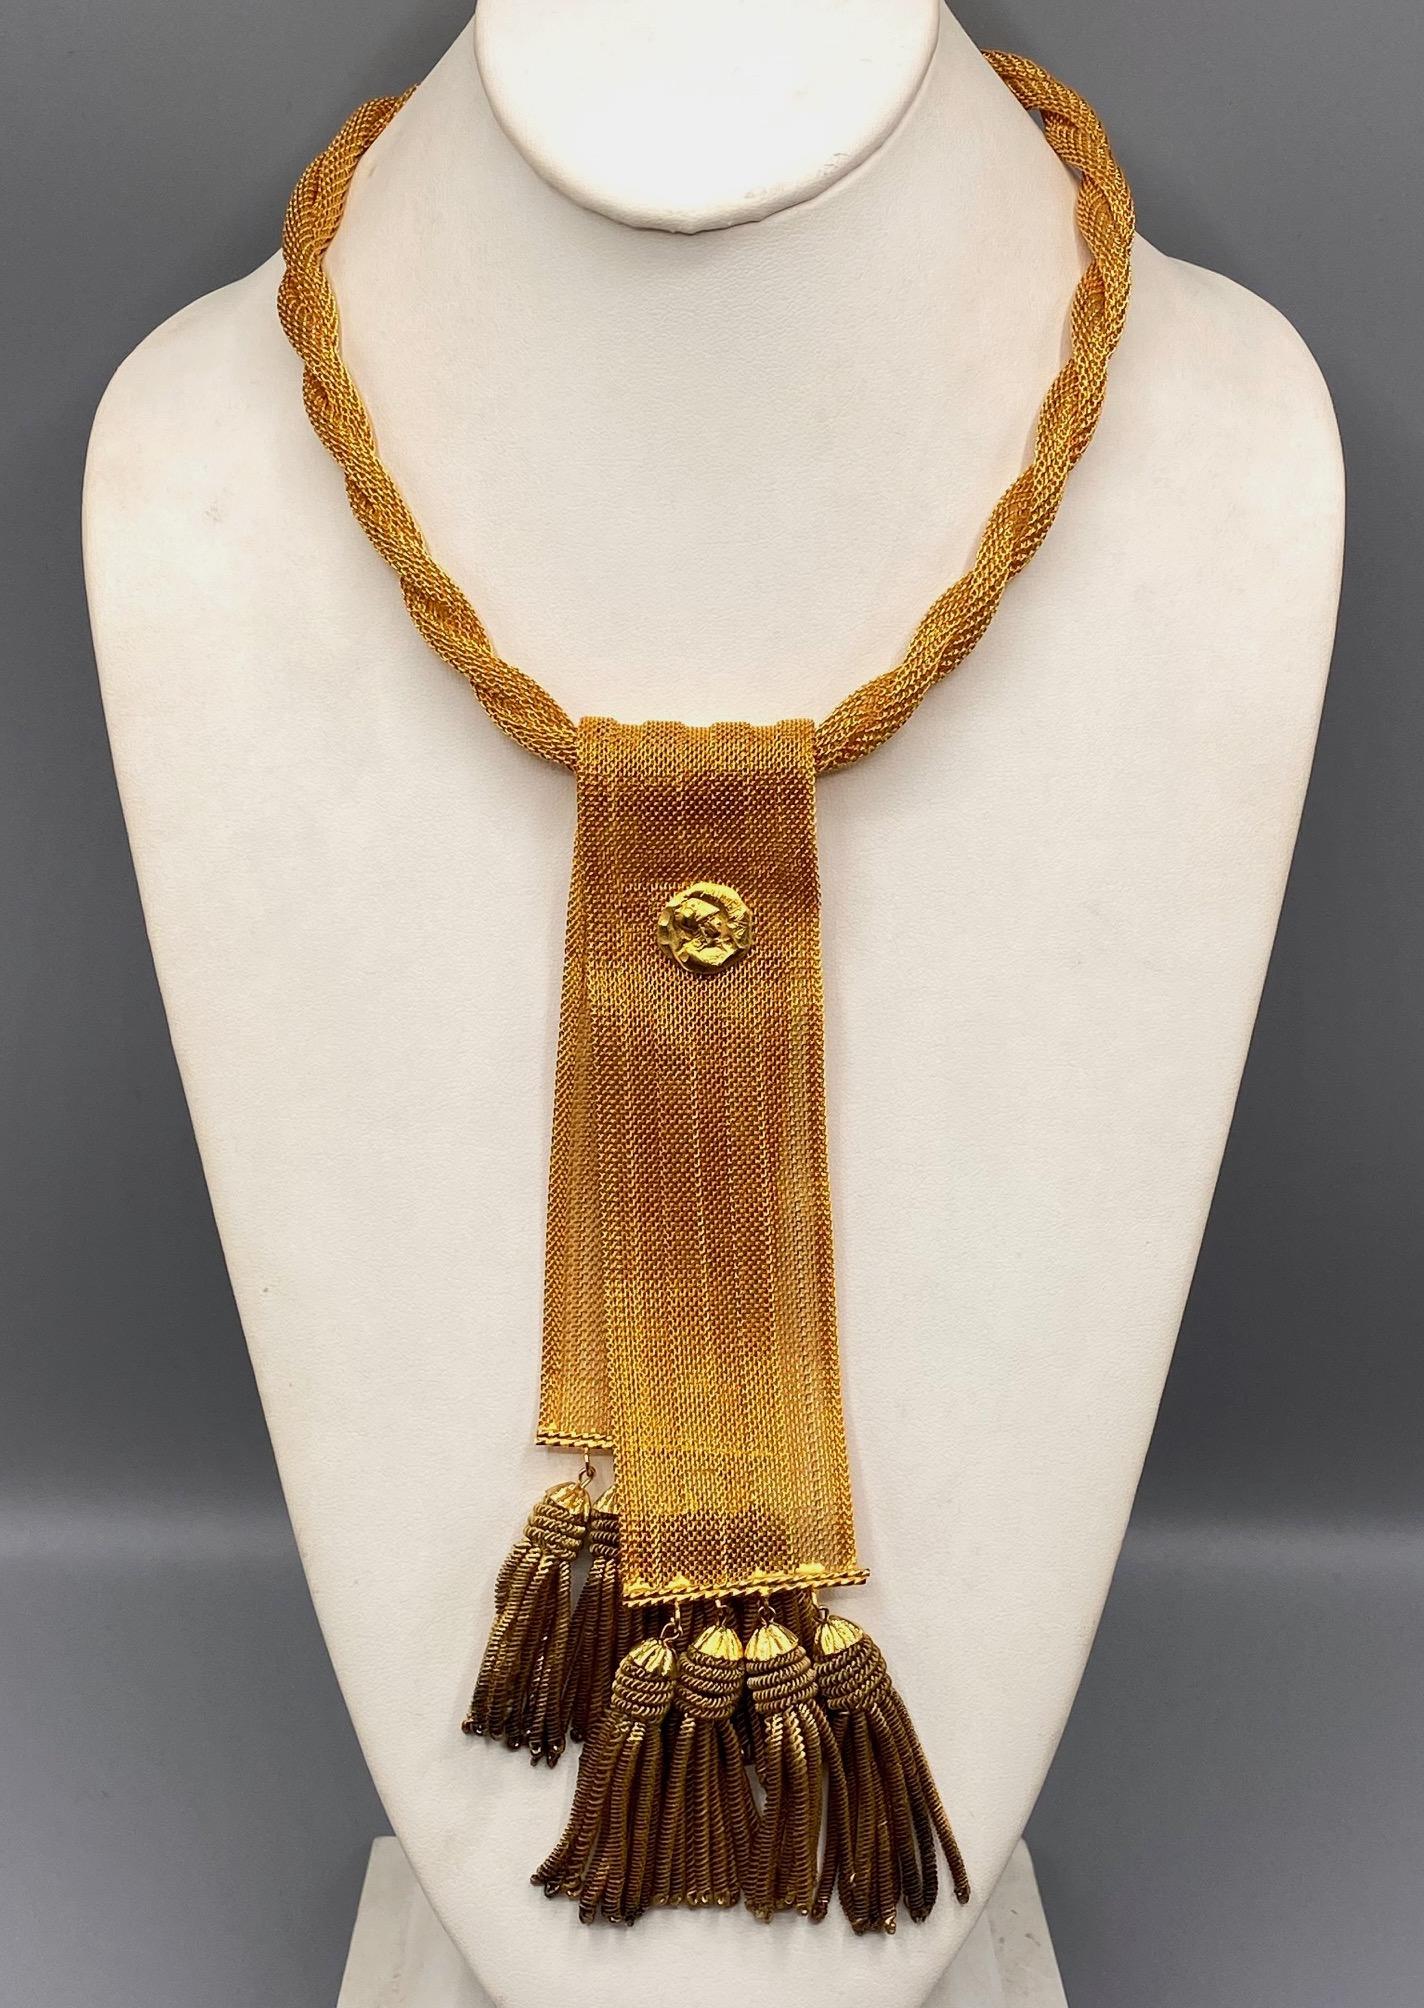 Präsentiert wird eine wunderbare und einzigartige 1970er Jahre Design Halskette von William DeLillo. Das Seil Twist Halskette ist  0,38 cm breit. Sie besteht aus zwei dünneren goldfarbenen, gewebten Hohlsträngen, die miteinander verdreht sind. Jedes